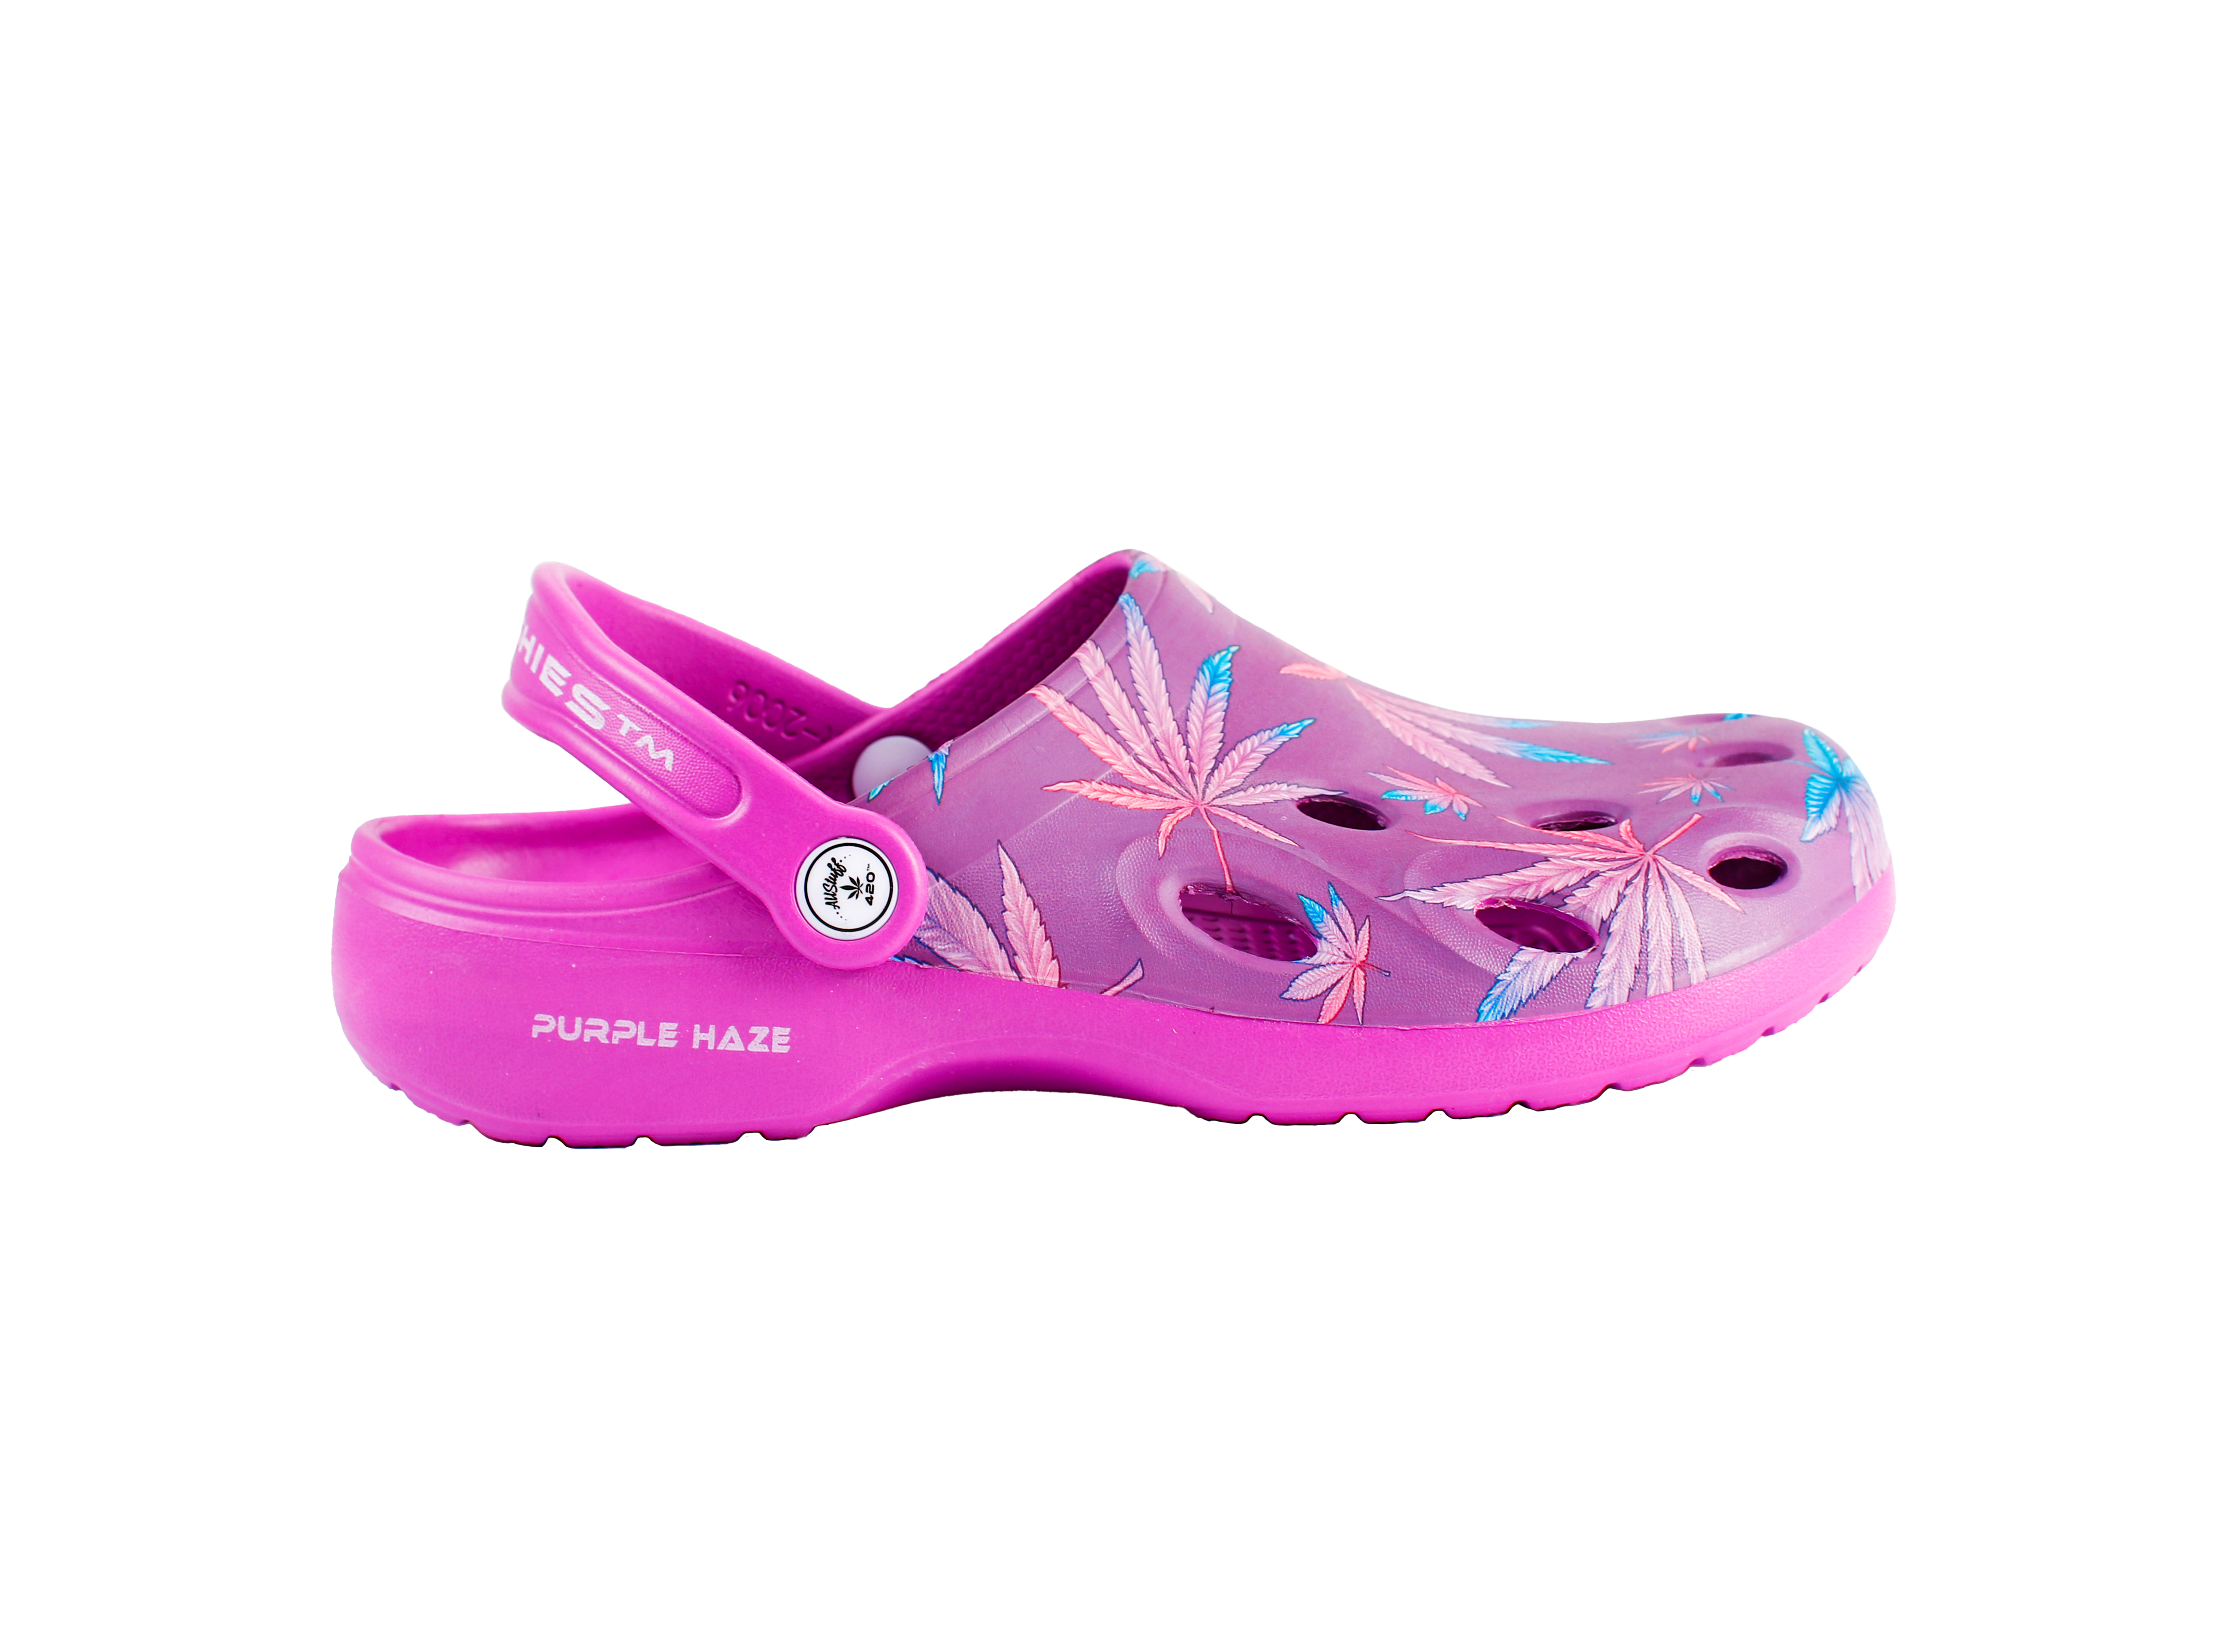 Holiday Apparel OG Kushies Purple Haze Clog Shoes for Men and Women Schoenen damesschoenen Klompen & Muilen 420 themed design Lightweight Slippers 